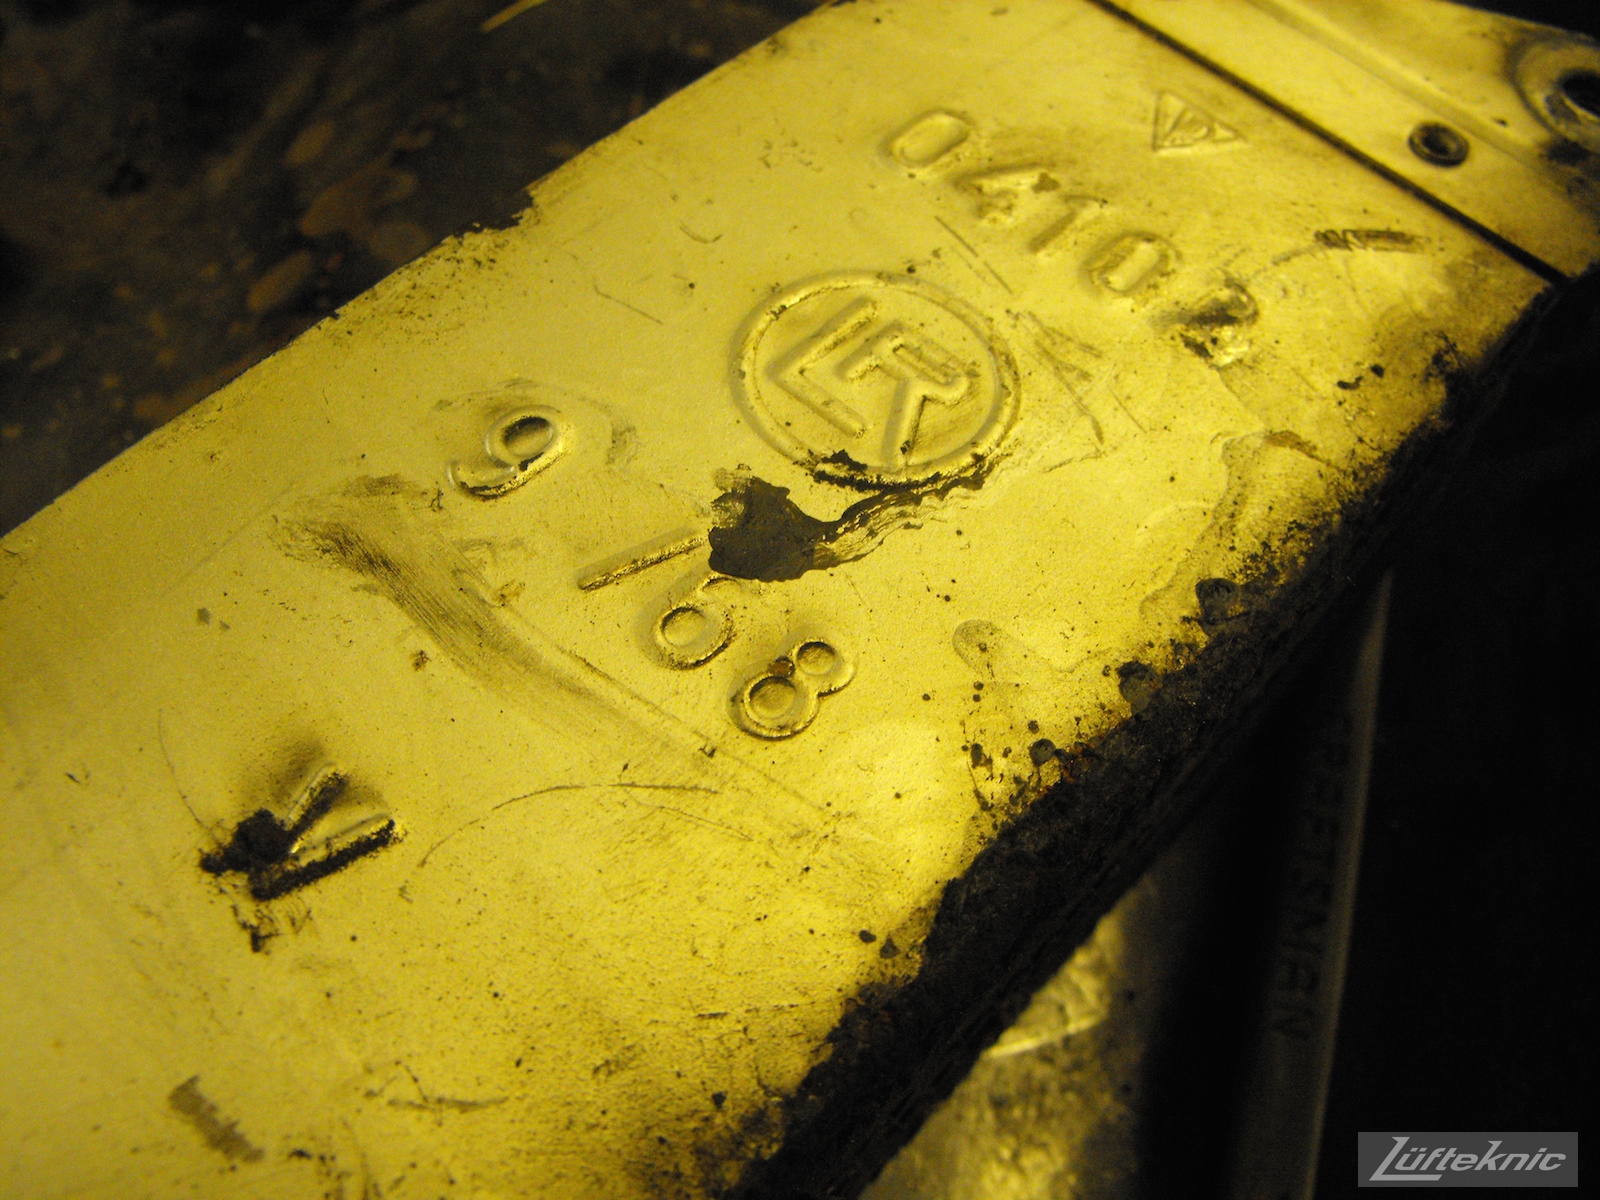 Date stamp on an oil cooler from an Irish Green Porsche 912 undergoing restoration at Lufteknic.